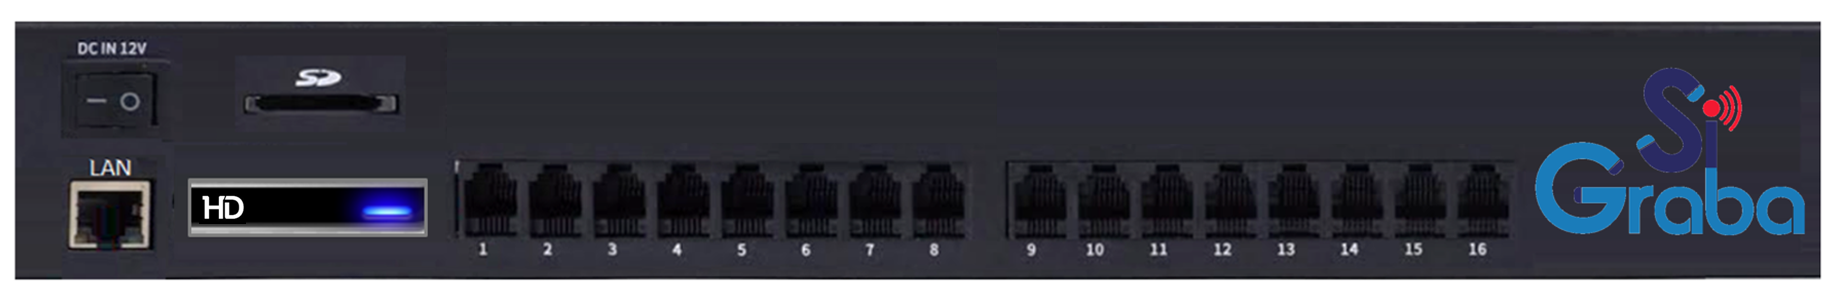 SiGraba con Micro Disco Duro SATA para almacenamiento de grabaciones además de ranura para Memoría SD con puerto de Red Ethernet, Salida SMDR y administración por explorador Web de 16 Puertos